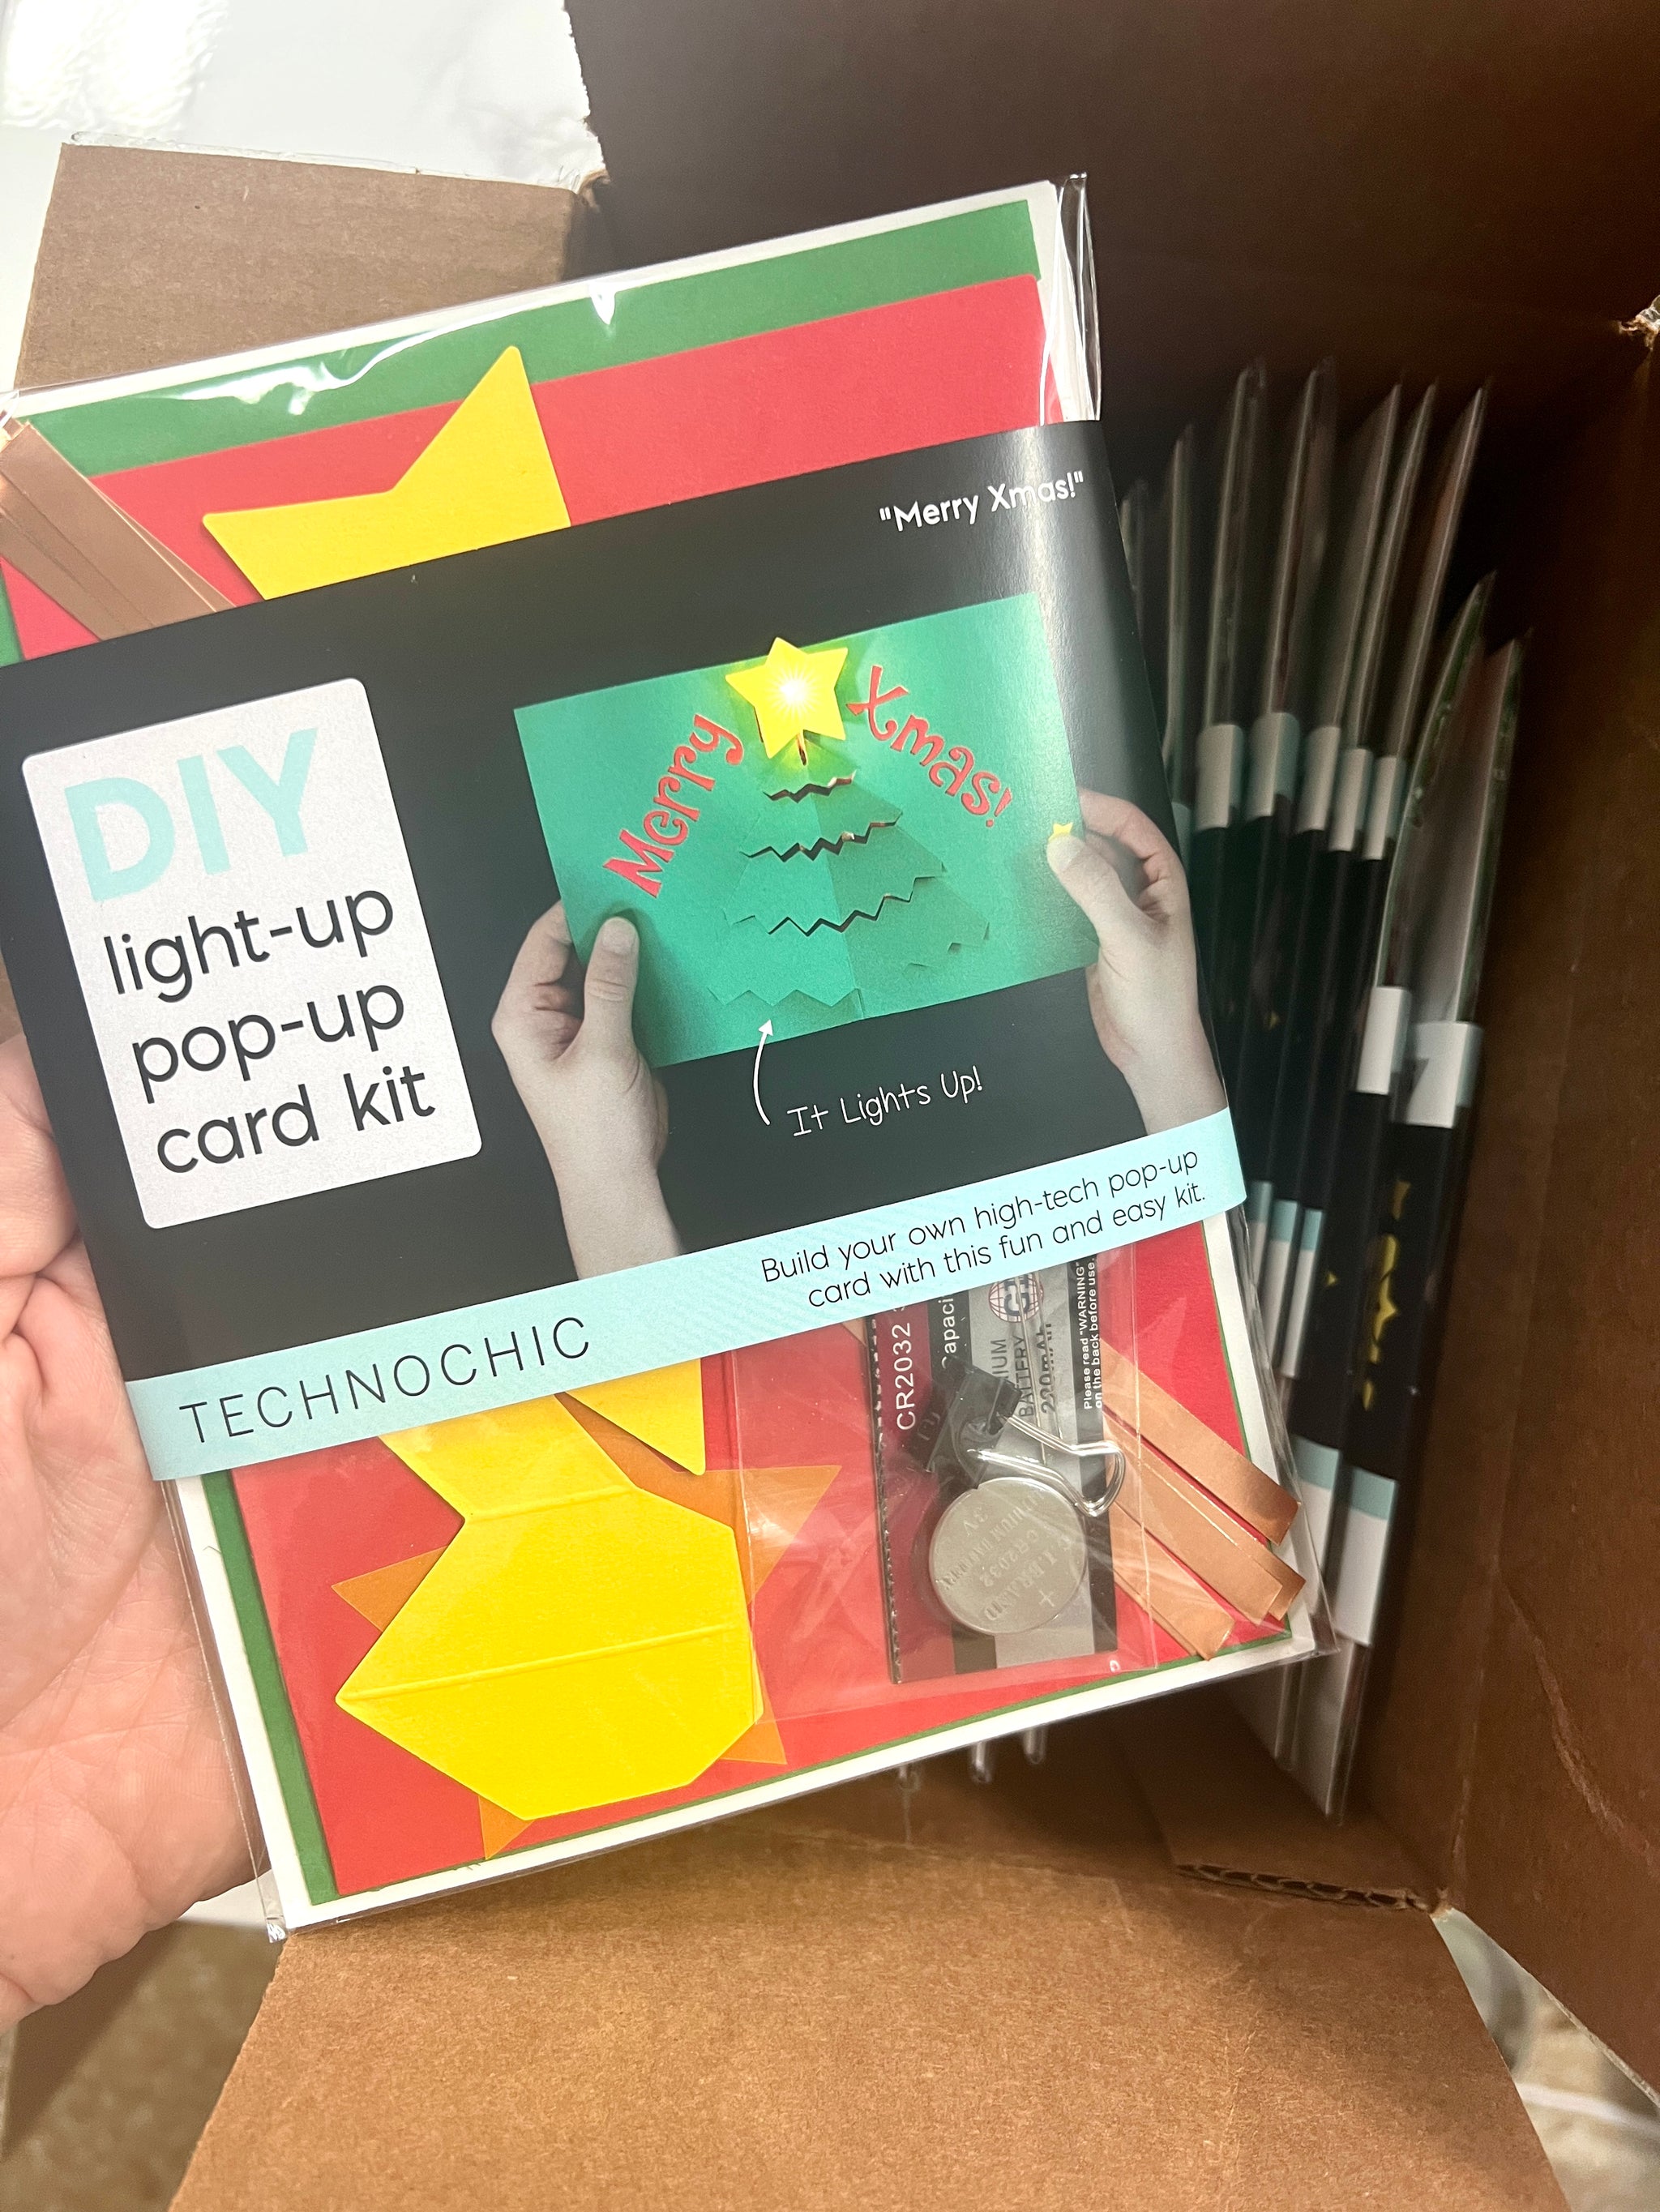 Light-up pop-up card kit- CASE of 25 Kits - Xmas Tree